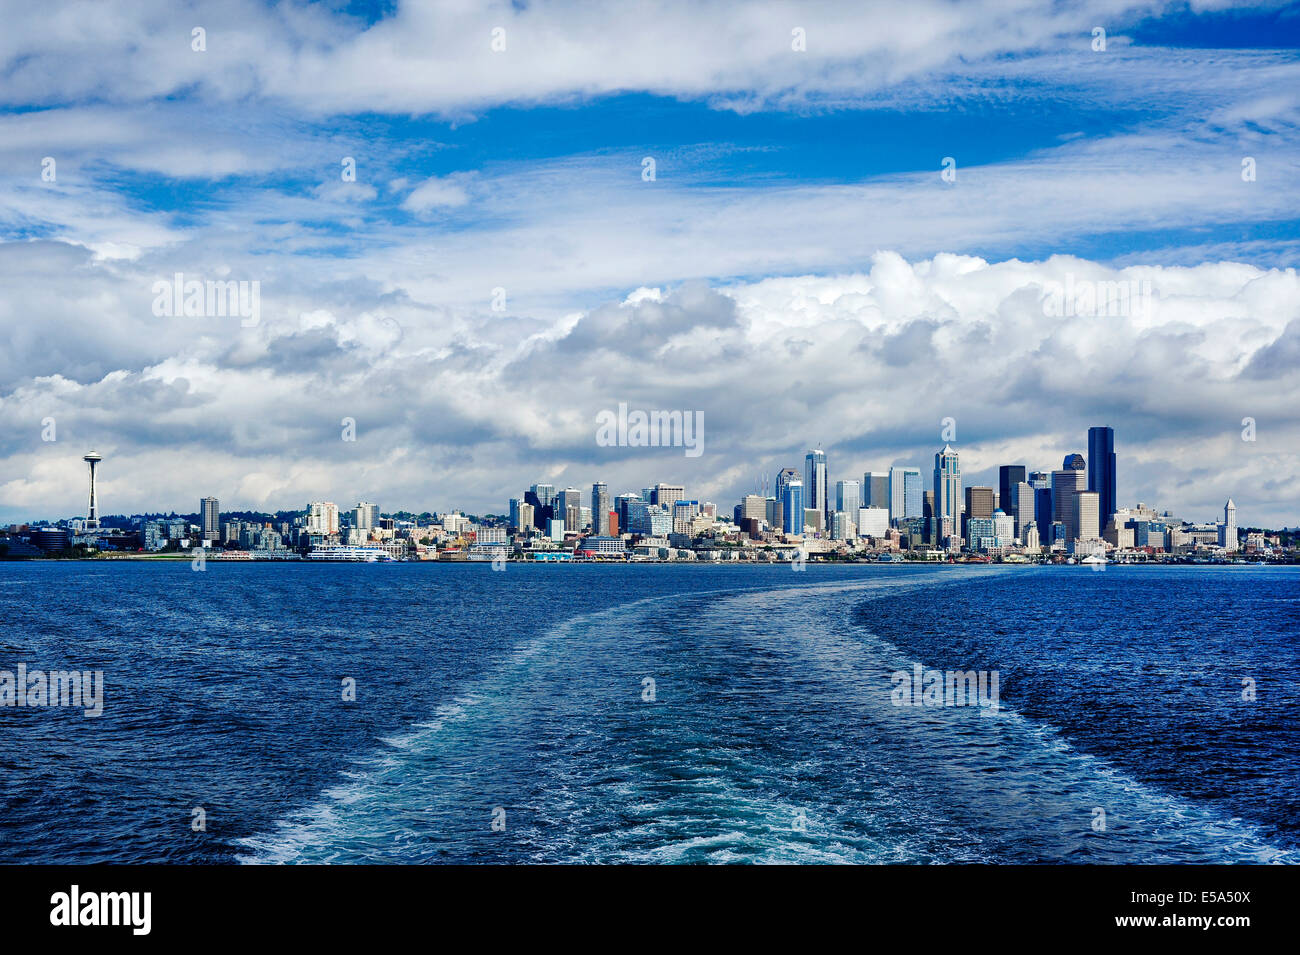 Seattle city skyline against cloudy sky, Seattle, Washington, United States Stock Photo